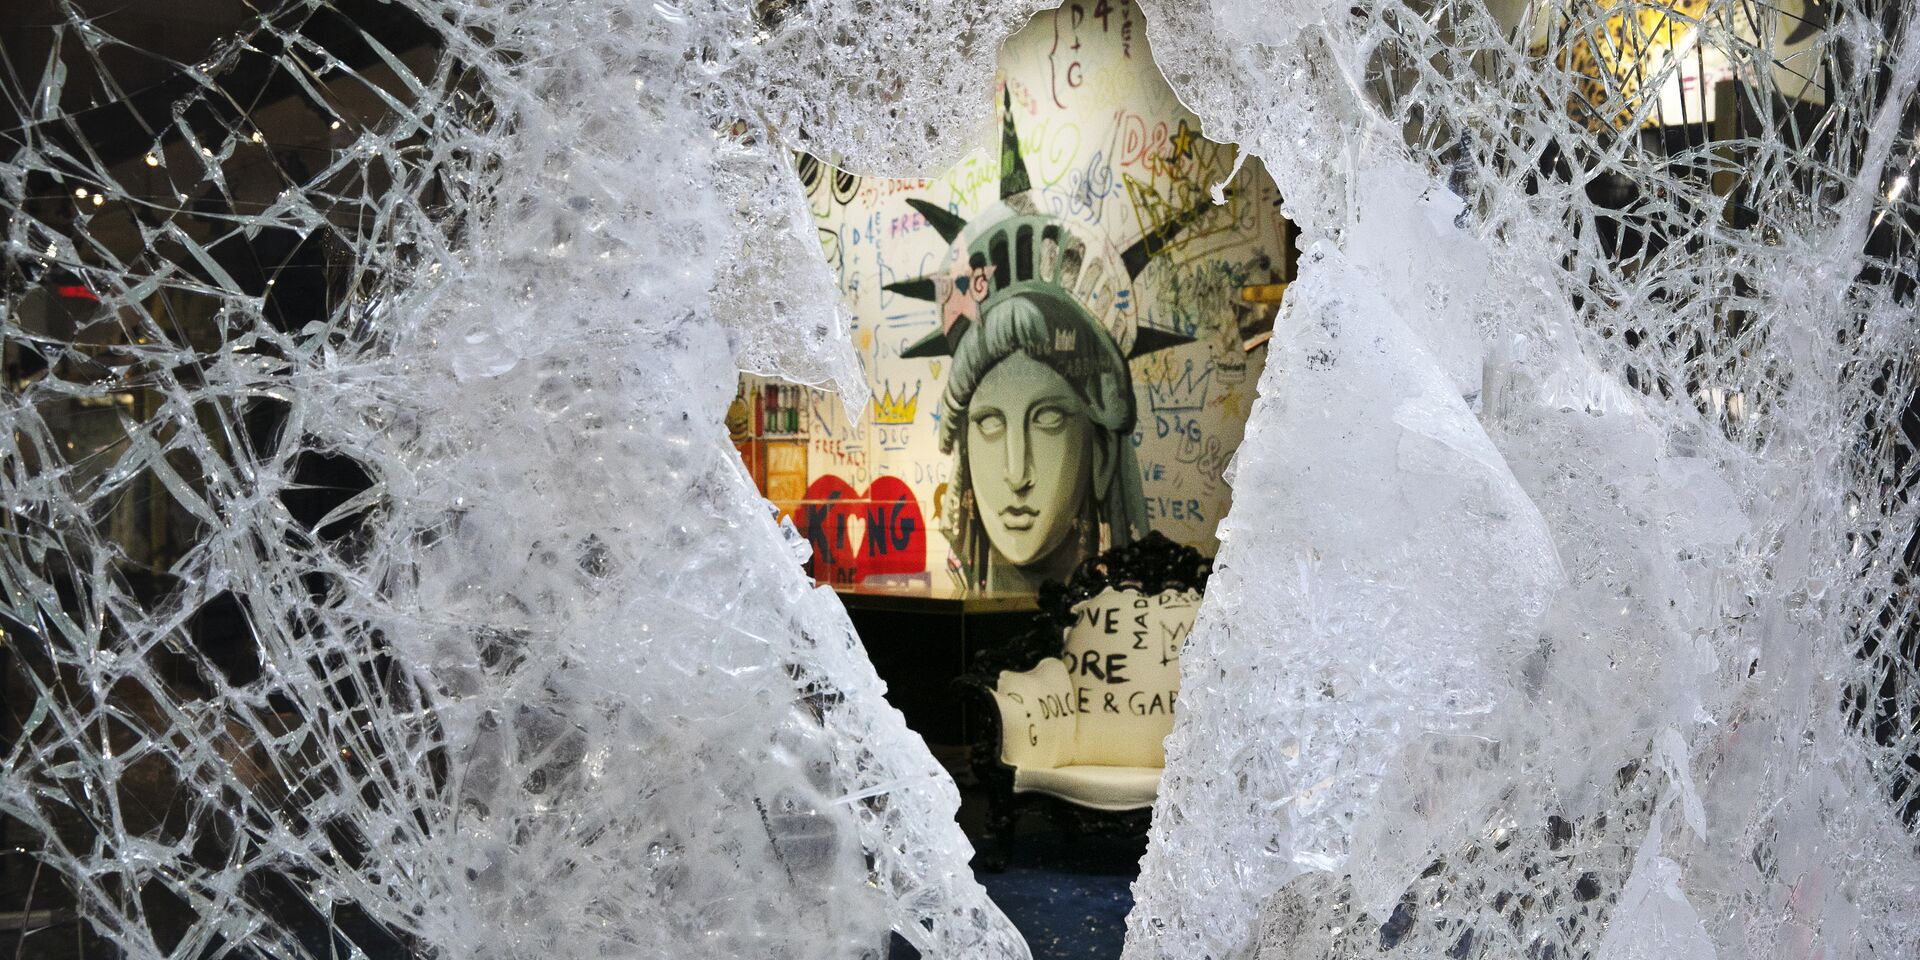 Граффити, изображающее лицо Статуи свободы, через разбитую витрину магазина в Нью-Йорке, США - ИноСМИ, 1920, 19.07.2021